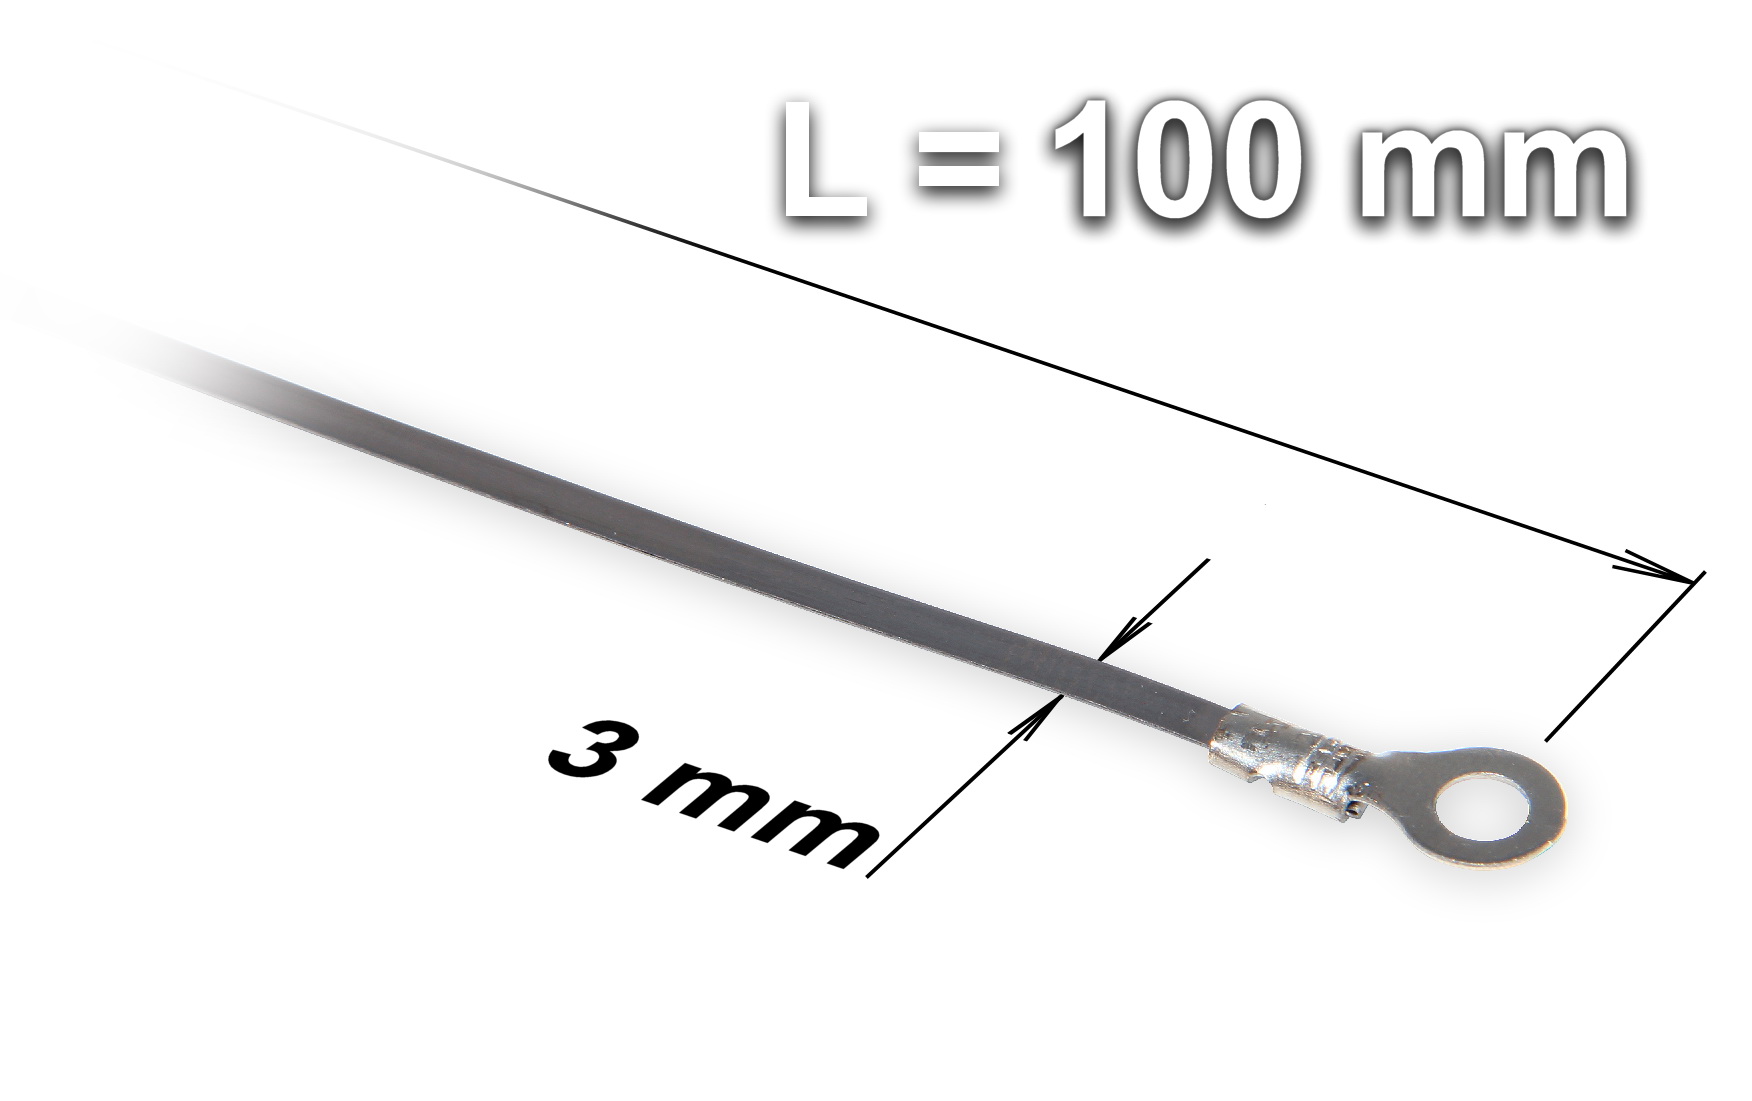 Náhradní odporový tavný drát ke svářečce KS-100 šířka 3 mm